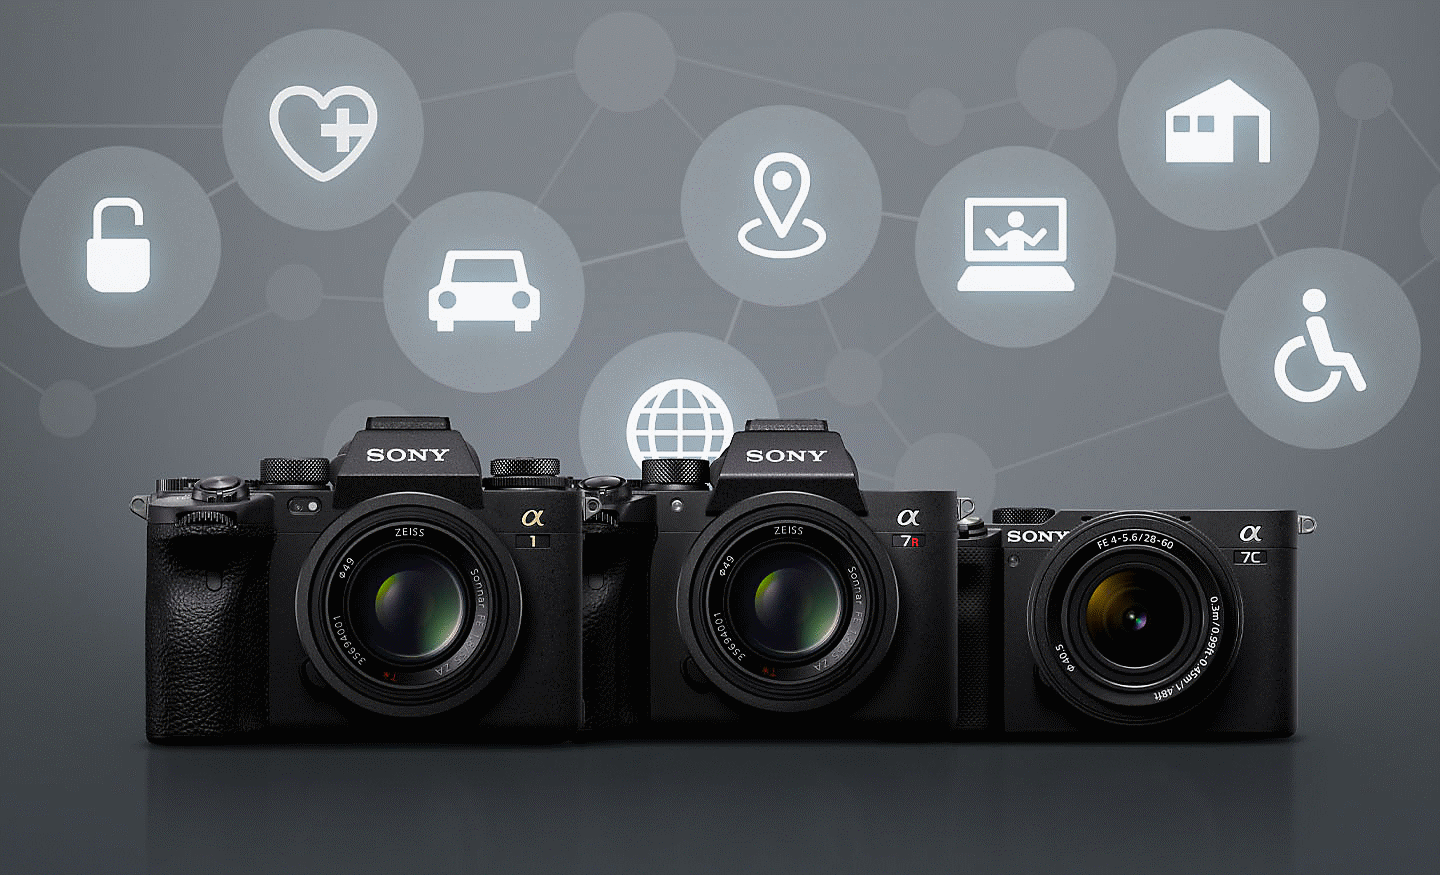 Keturi „Sony“ fotoaparatai pilkame fone su įvairiomis baltomis piktogramomis, simbolizuojančiomis nuotolinį ryšį